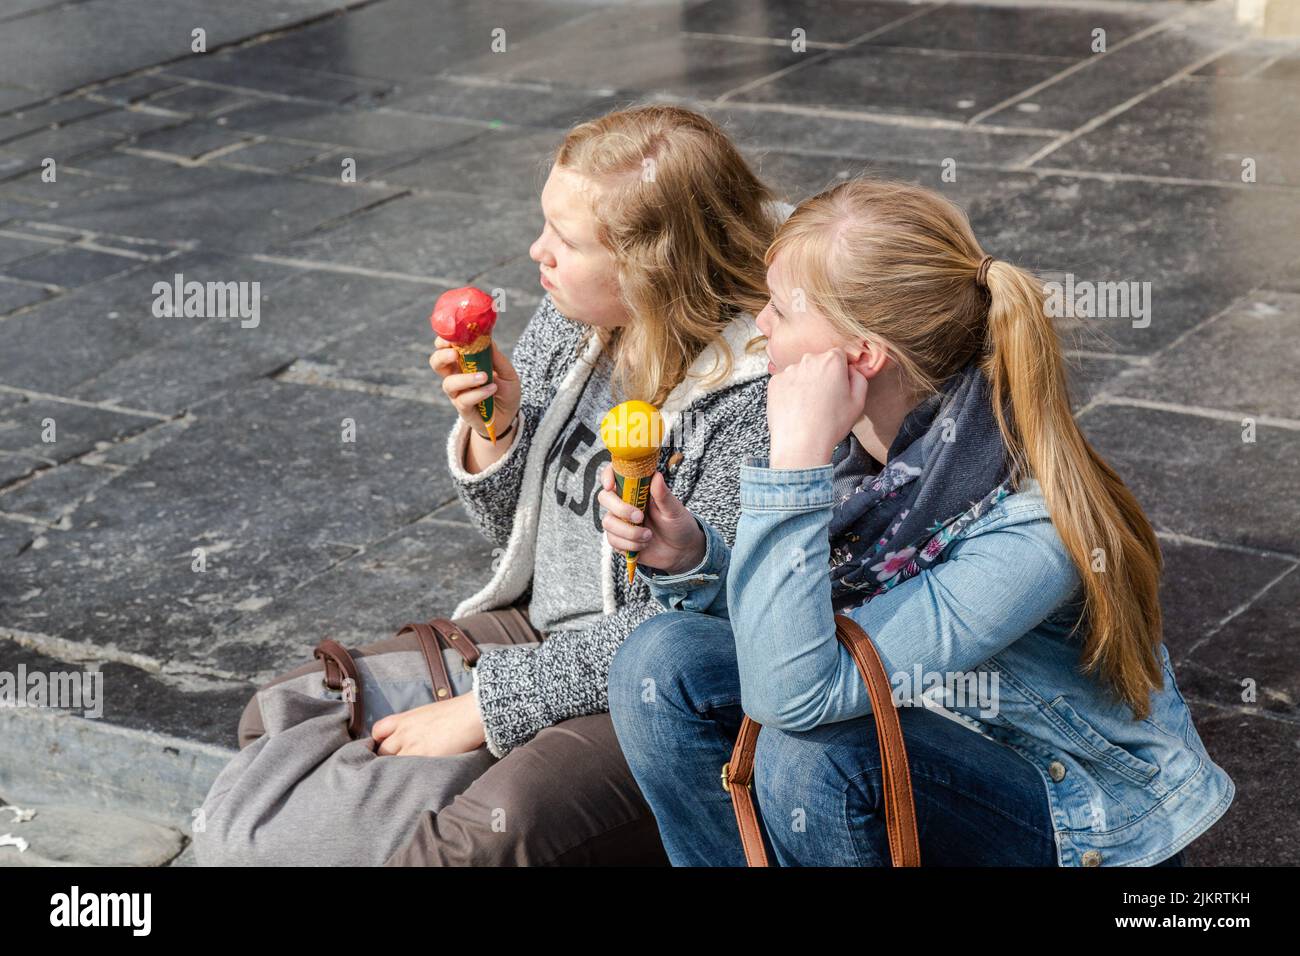 Dos mujeres jóvenes, portando un cono de helado, una cuchara roja, la otra amarilla, sentada en el borde de la acera. Foto de stock